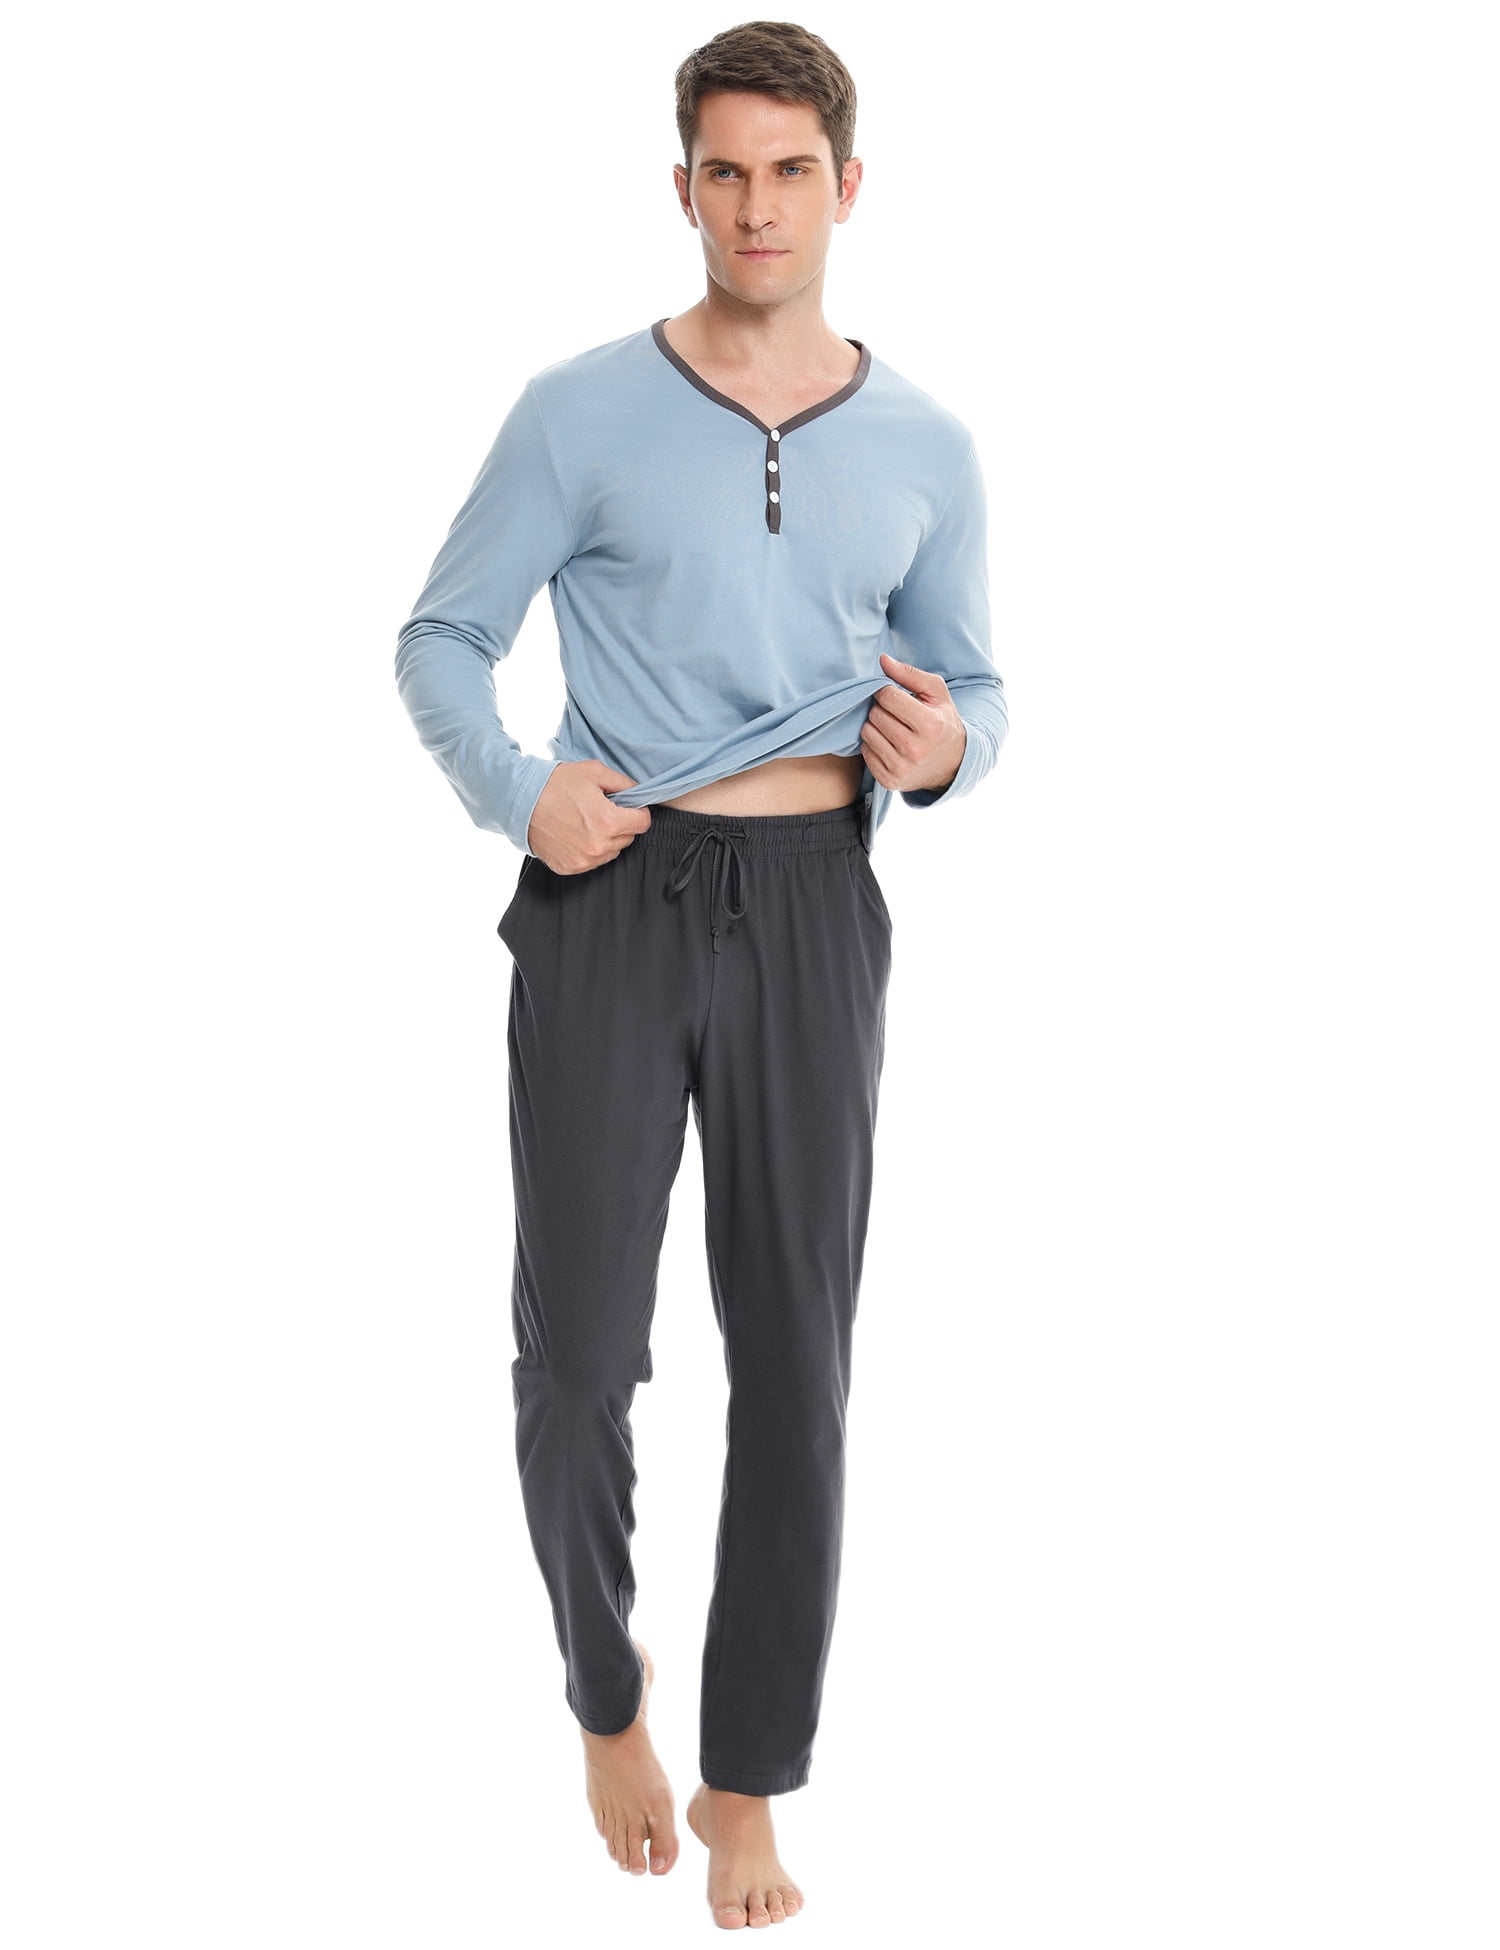 Hawiton Mens Pyjamas Set Cotton Long Sleeve Top & Pants Pjs Nightwear Sleepwear Loungwear for Man